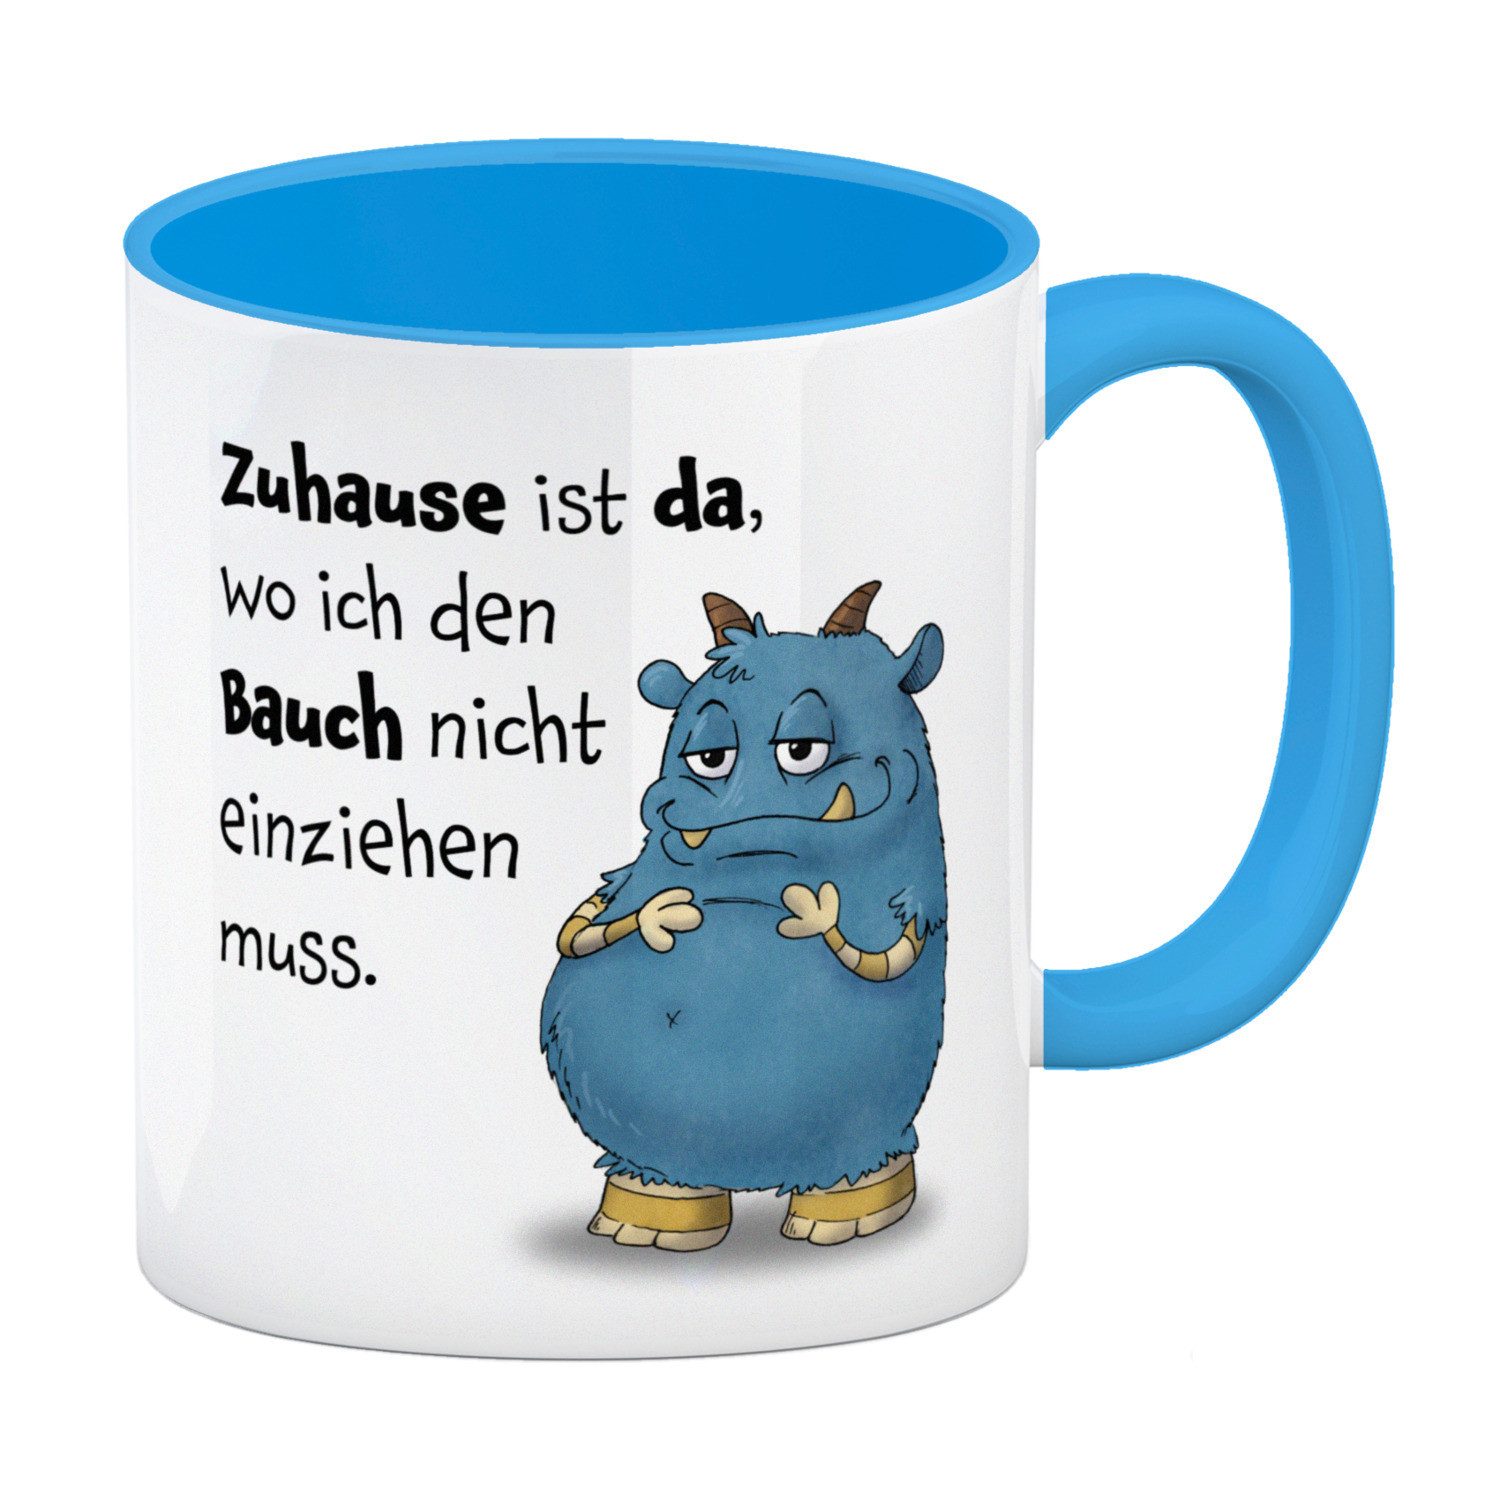 speecheese Tasse Freches Monster in blau Kaffeebecher in hellblau mit lustigem Spruch